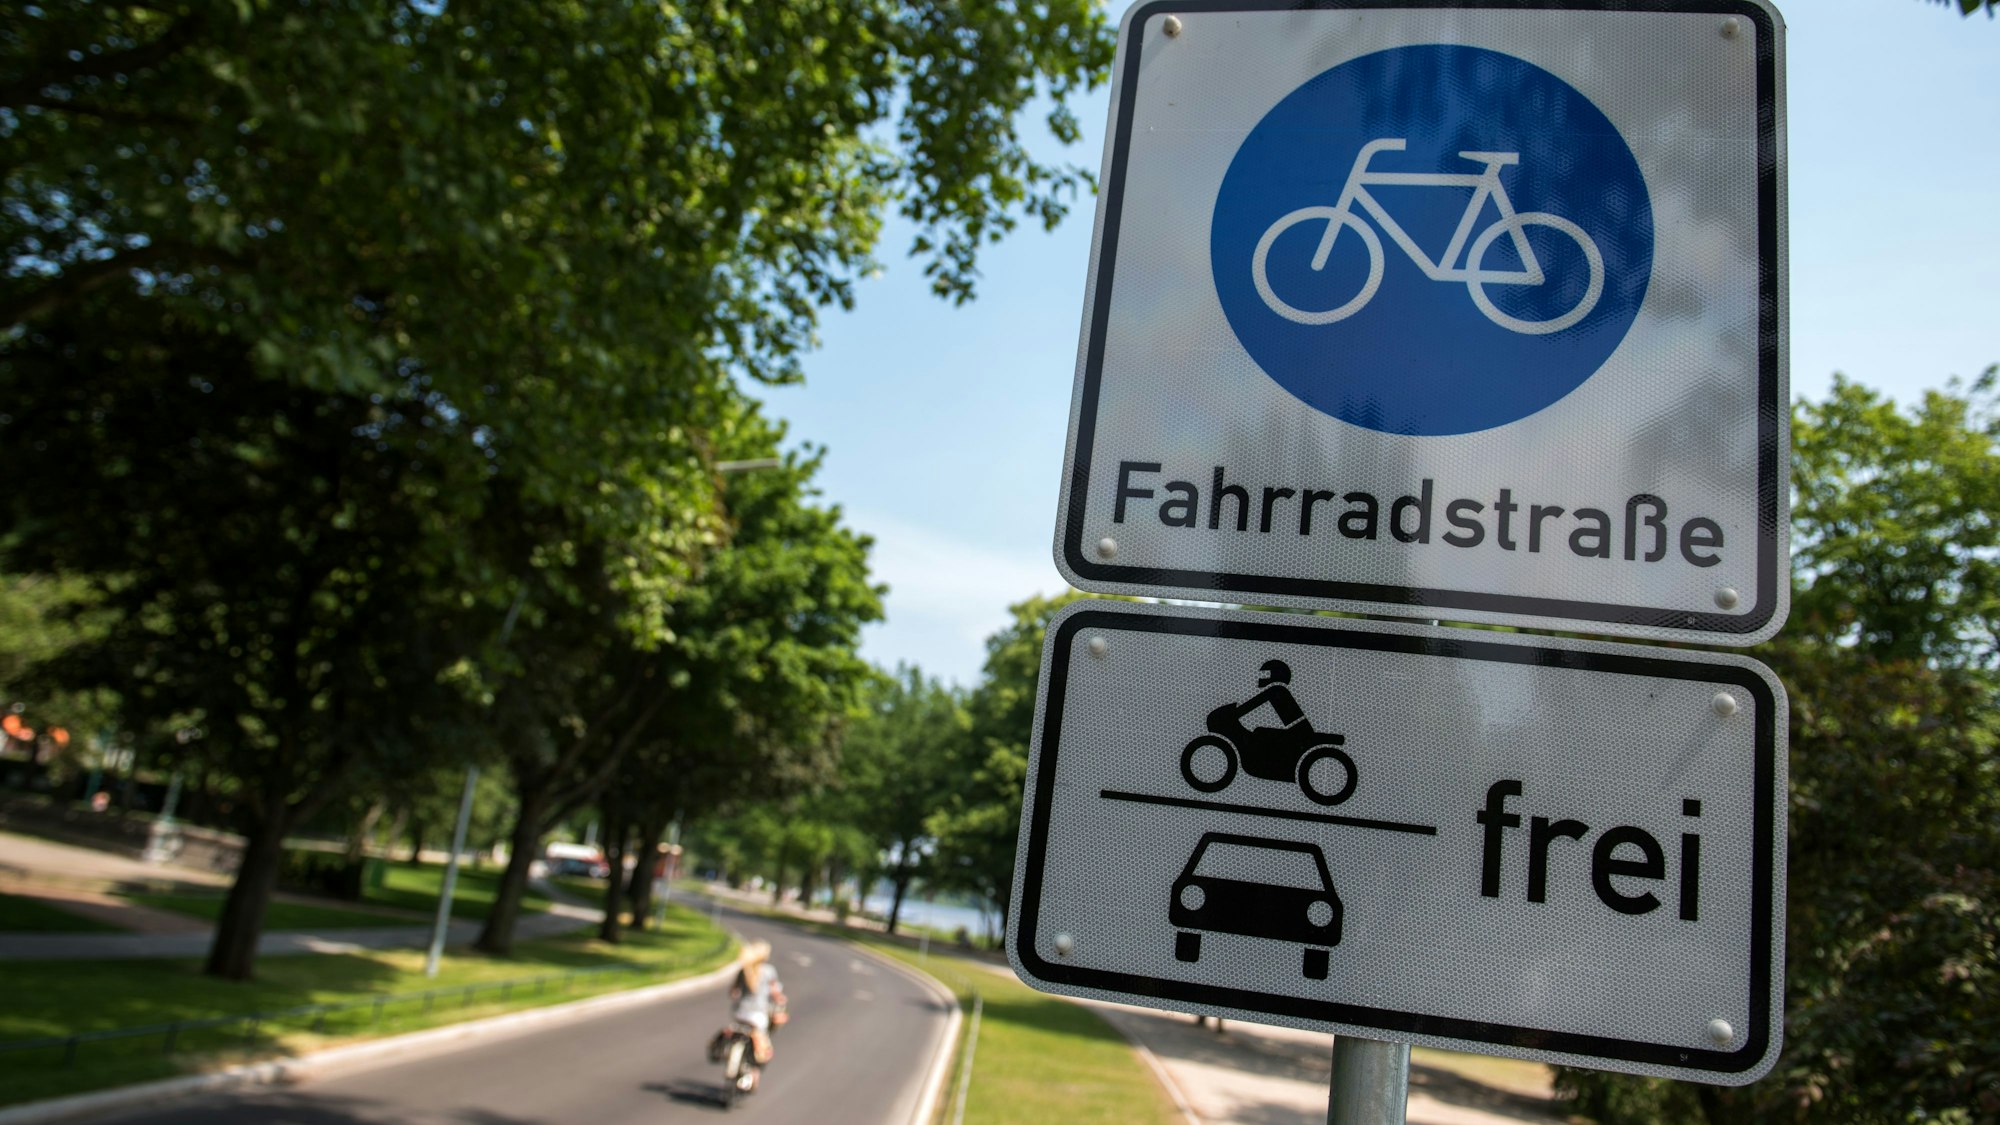 Ein Schild Fahrradstraße mit dem Zusatz Motorräder und Autos frei hängt an einer Fahrradstraße, auf der eine Radfahrerin unterwegs ist.